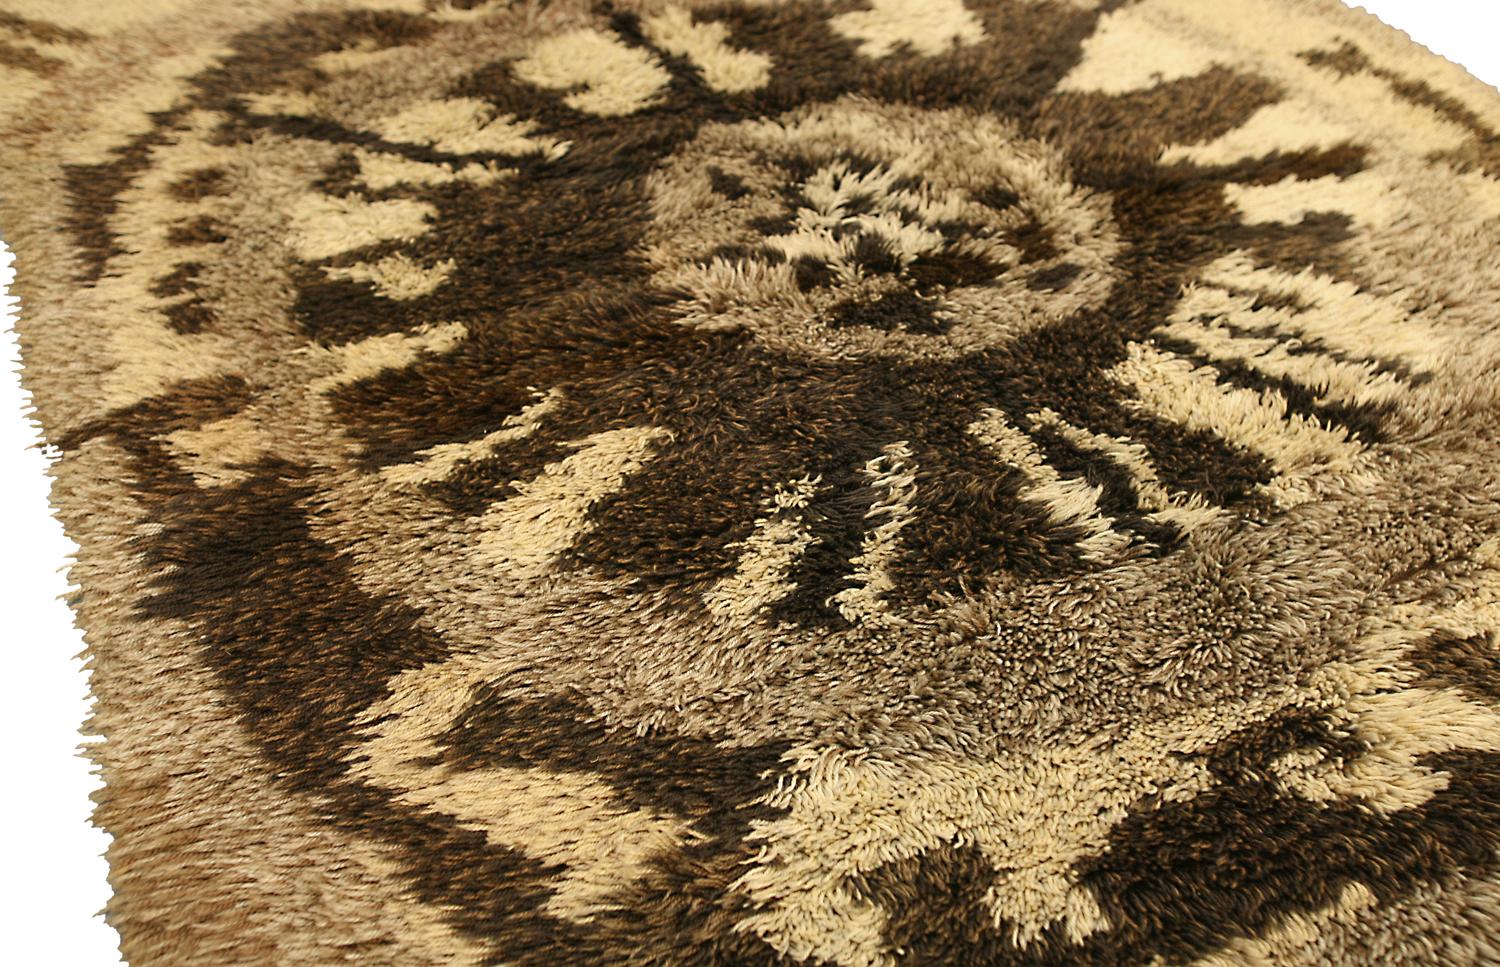 Dieser Teppich ist ein Kunstwerk, das jeden Raum verschönert. Das kühne, abstrakte Design ist auffallend und einzigartig, und die Farben sind fröhlich und lebendig. Der Teppich ist aus hochwertiger Wolle gefertigt, wodurch er weich und angenehm zu